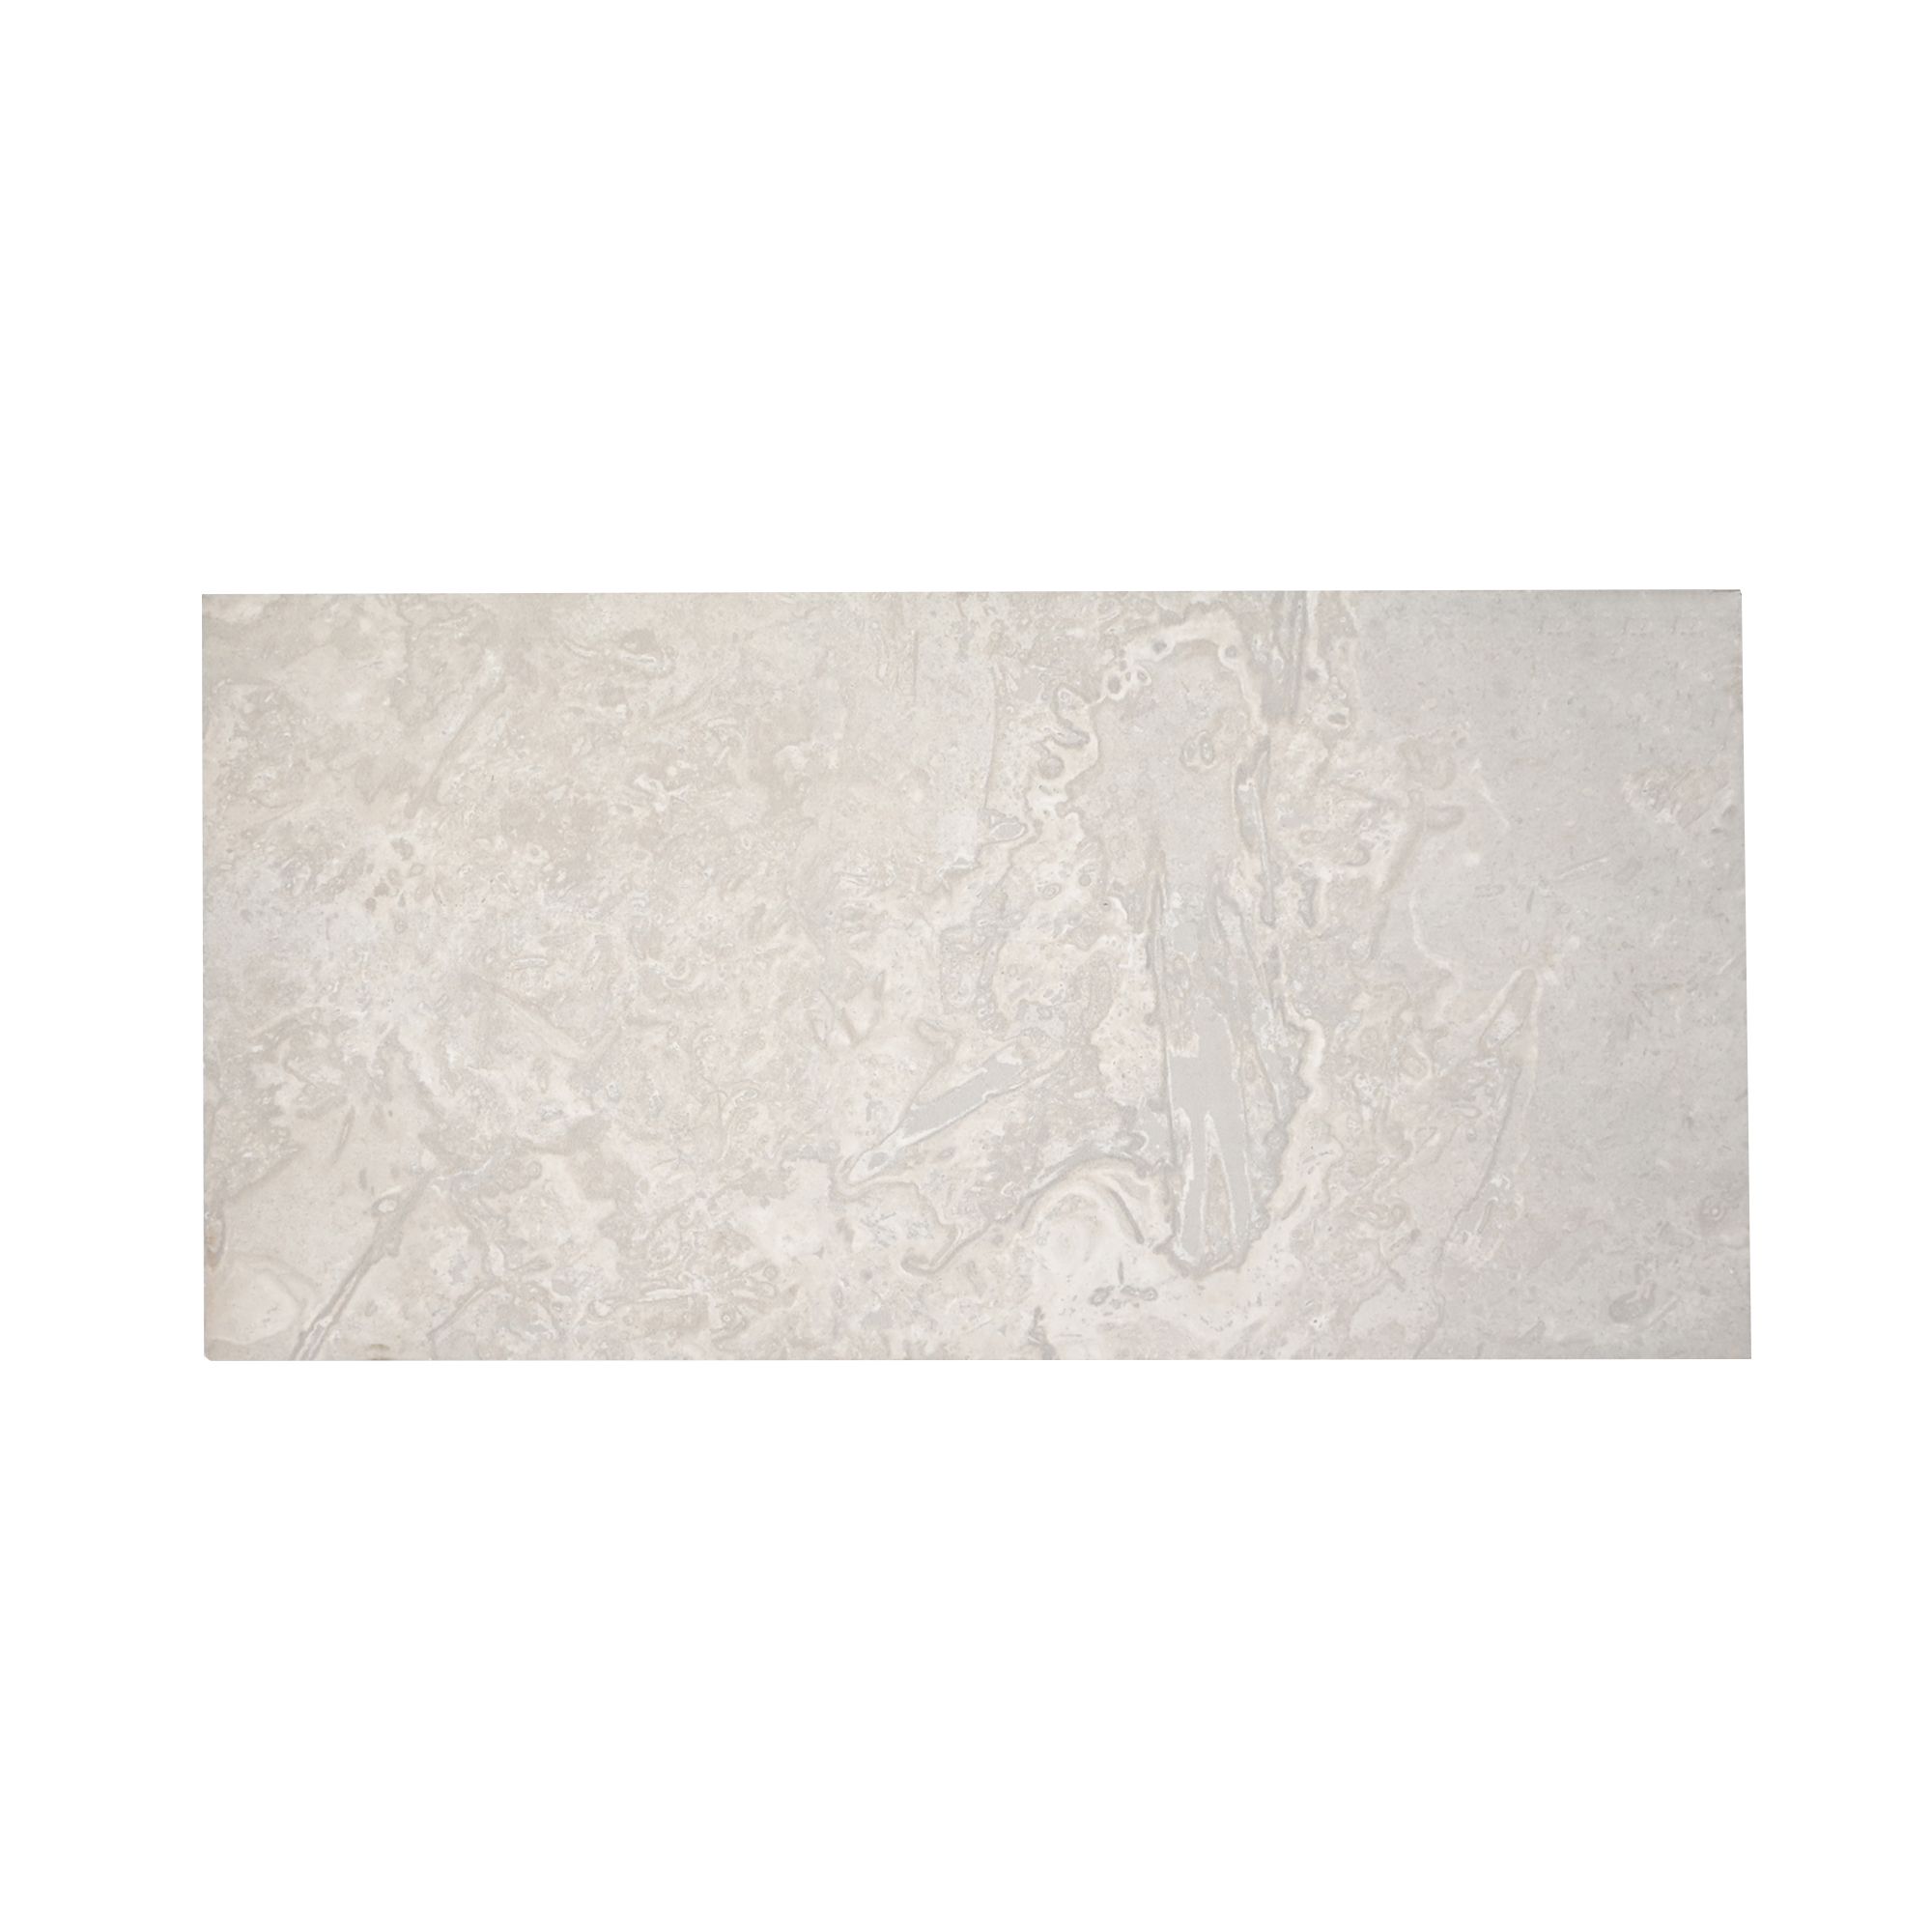 Johnson Tiles Spencer White Matt Natural Stone effect Ceramic Indoor Wall & floor Tile, Pack of 5, (L)600mm (W)300mm